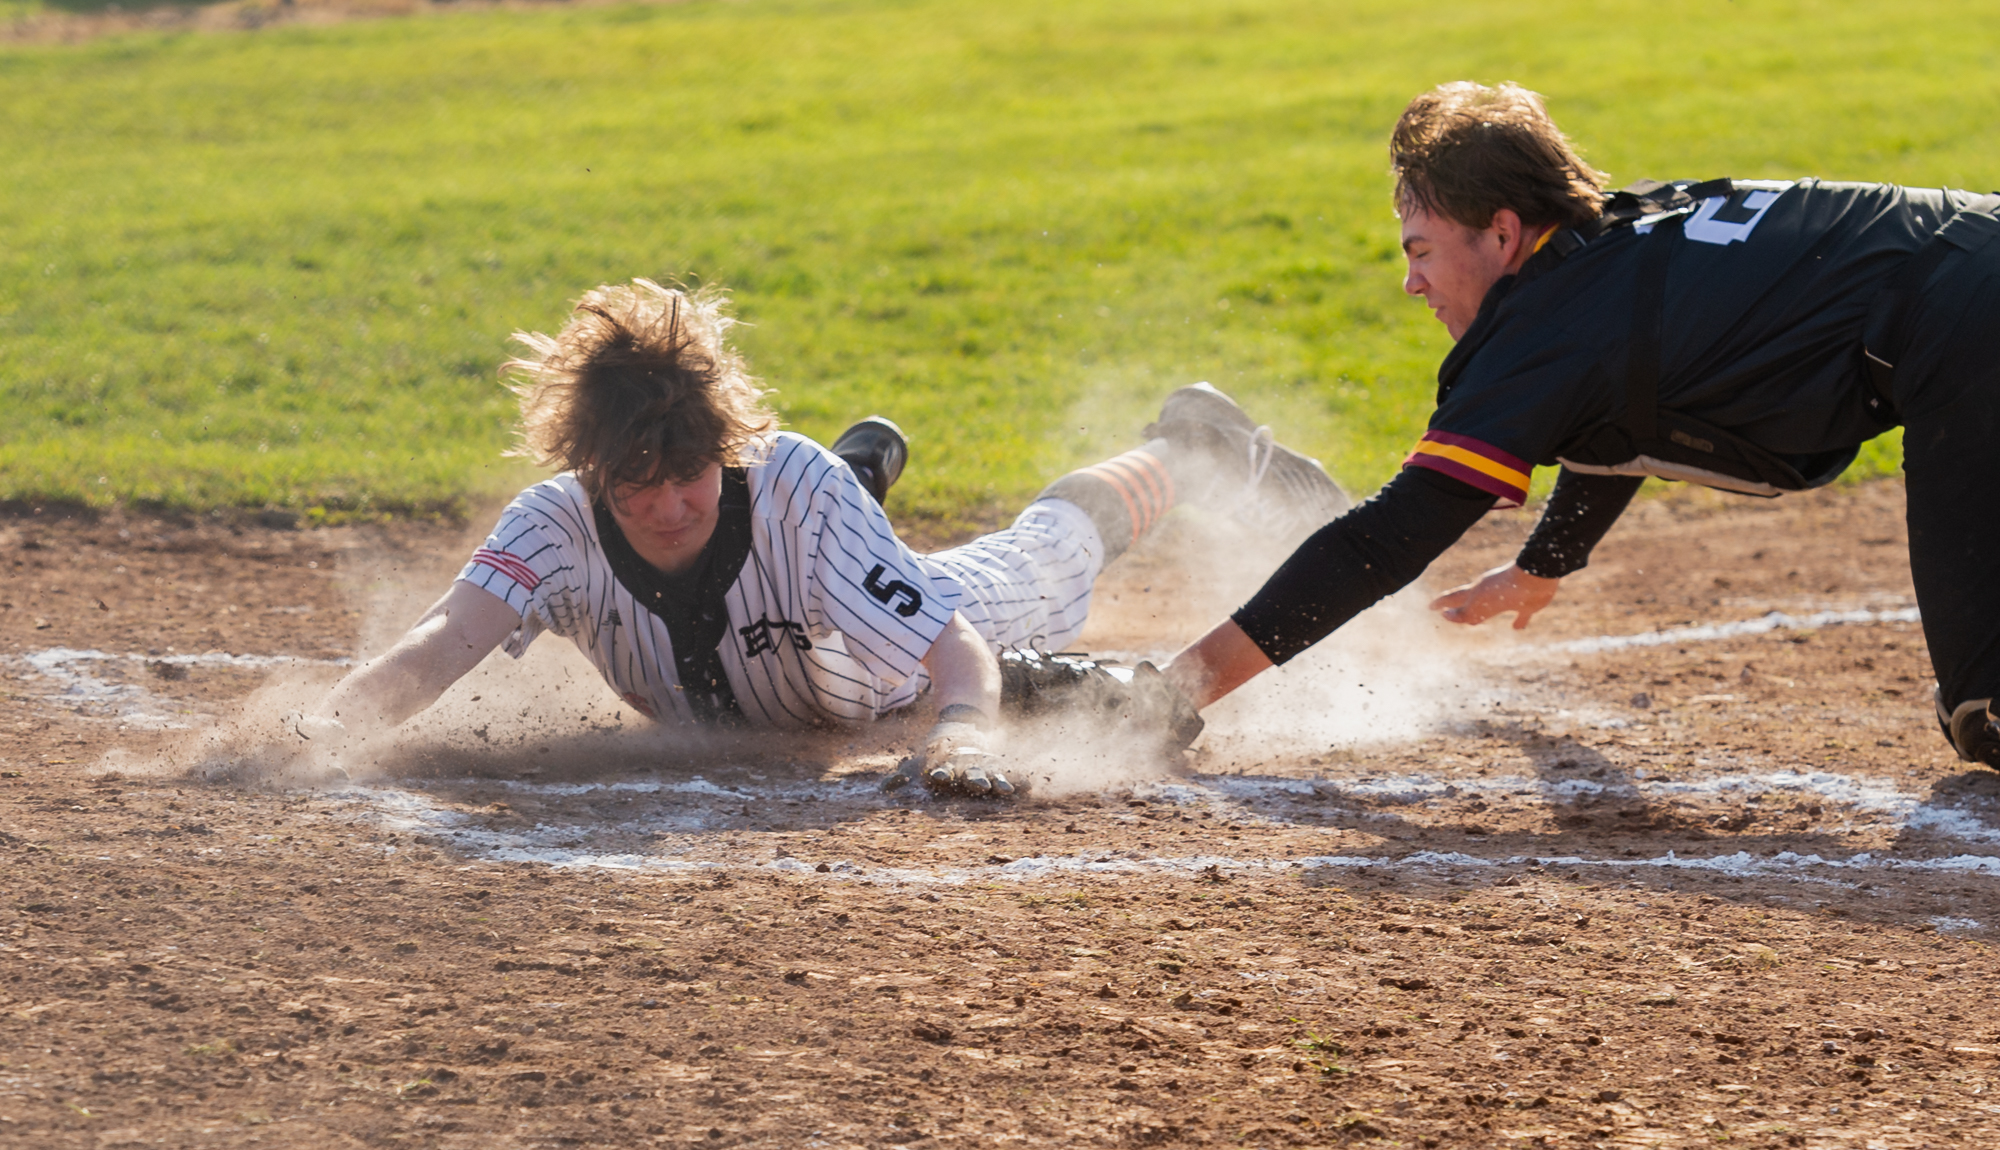 Baseball: Battle Ground vs. Prairie